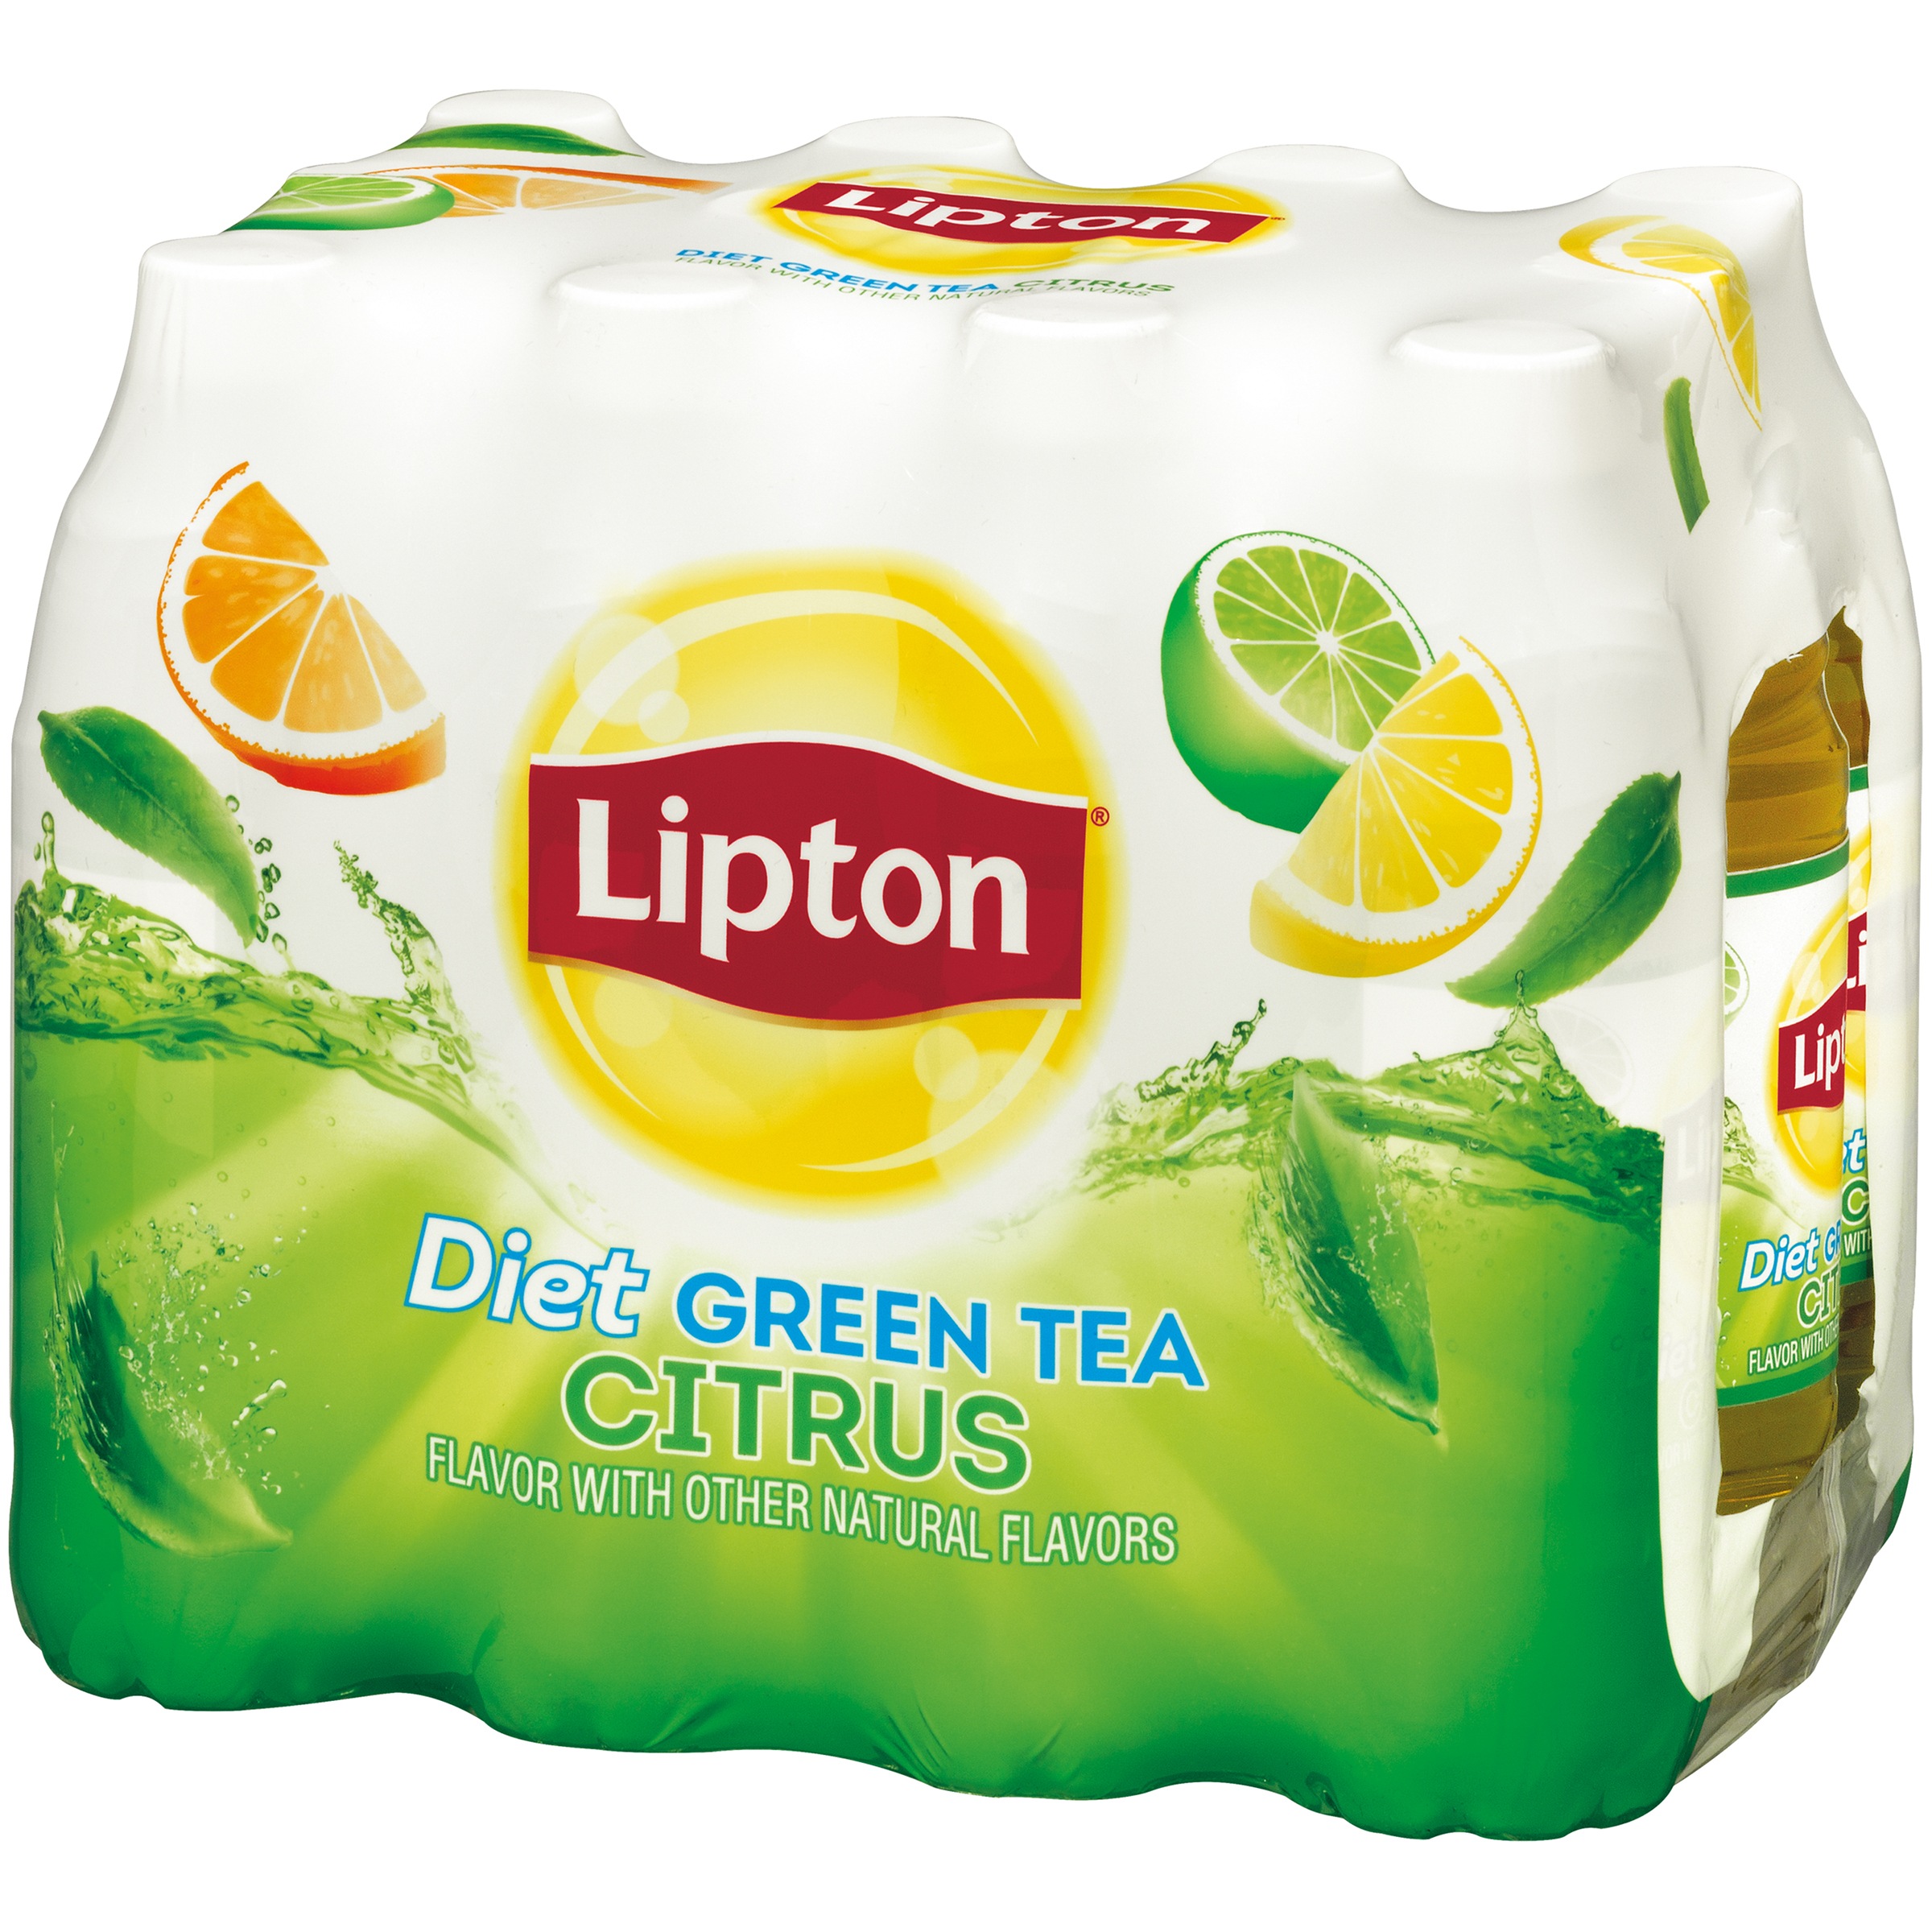 Lipton Diet Green Tea Citrus Iced Tea, Bottled Tea Drink, 16.9 fl oz, 12 Pack Bottles - image 3 of 5